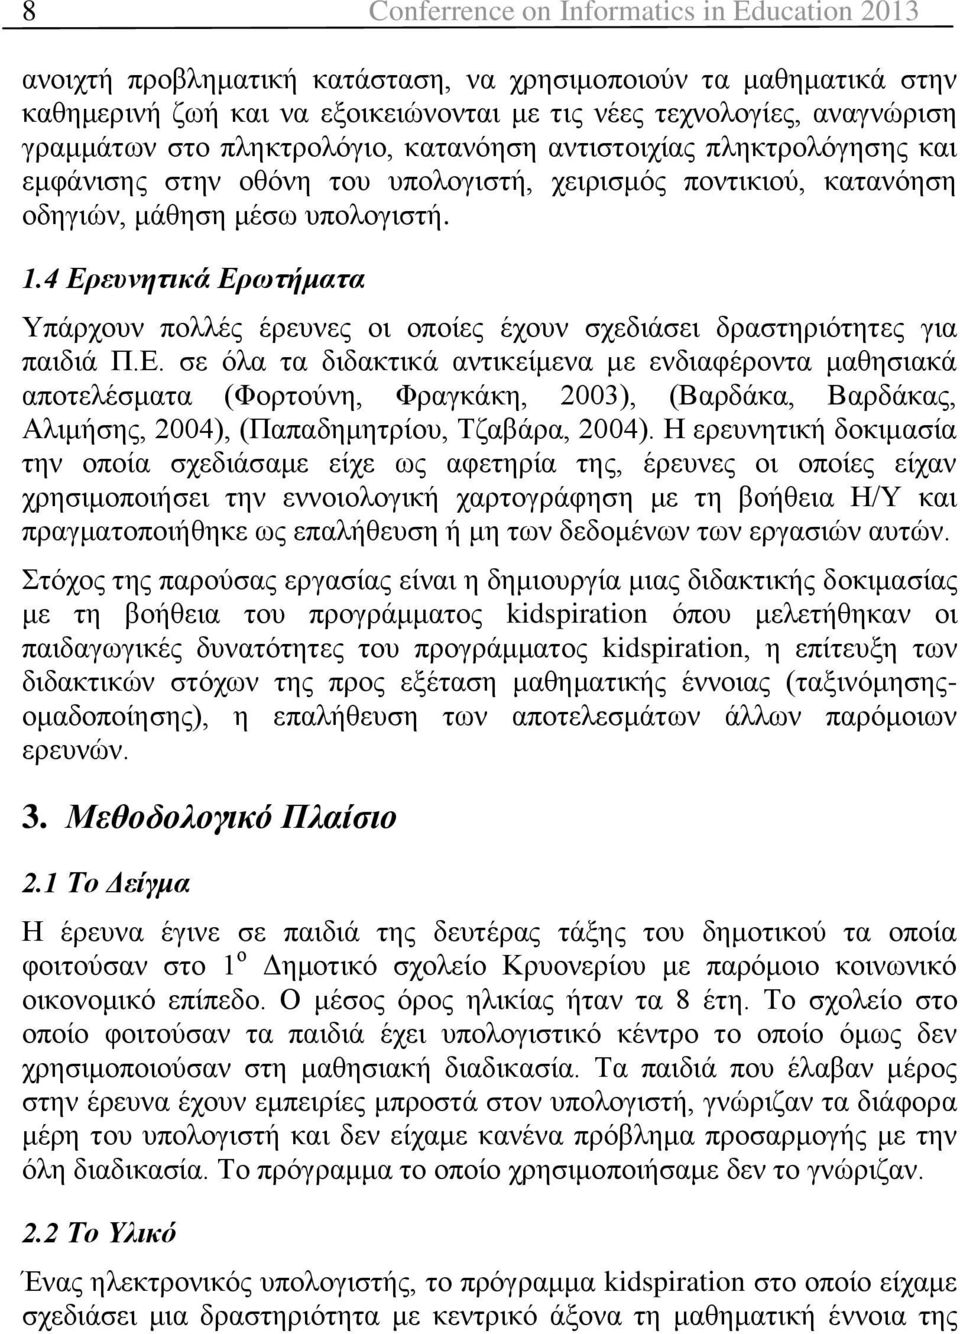 4 Ερευνητικά Ερωτήματα Υπάρχουν πολλές έρευνες οι οποίες έχουν σχεδιάσει δραστηριότητες για παιδιά Π.Ε. σε όλα τα διδακτικά αντικείμενα με ενδιαφέροντα μαθησιακά αποτελέσματα (Φορτούνη, Φραγκάκη, 2003), (Βαρδάκα, Βαρδάκας, Αλιμήσης, 2004), (Παπαδημητρίου, Τζαβάρα, 2004).